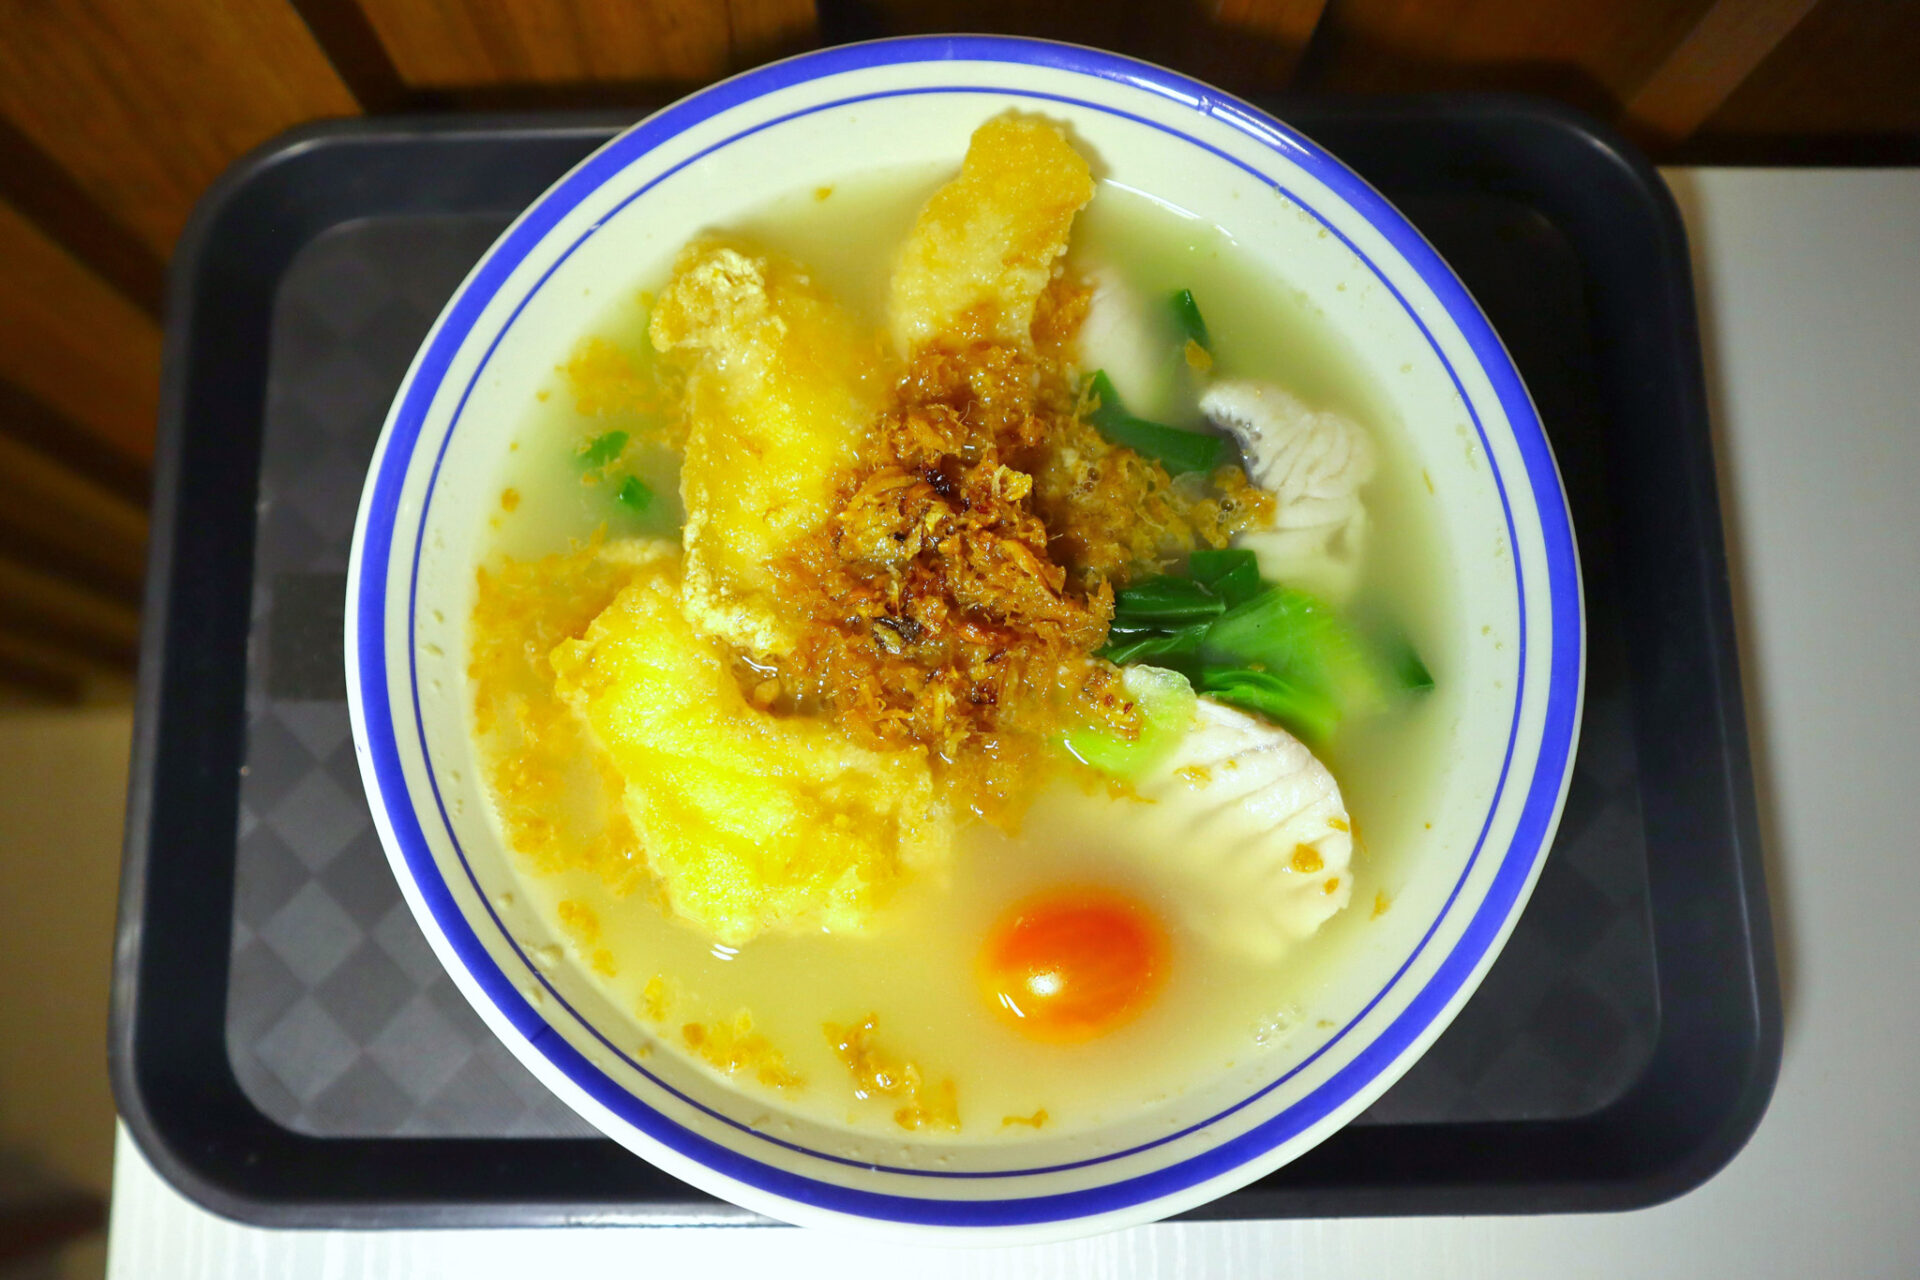 fish soup paradise - dual fish soup